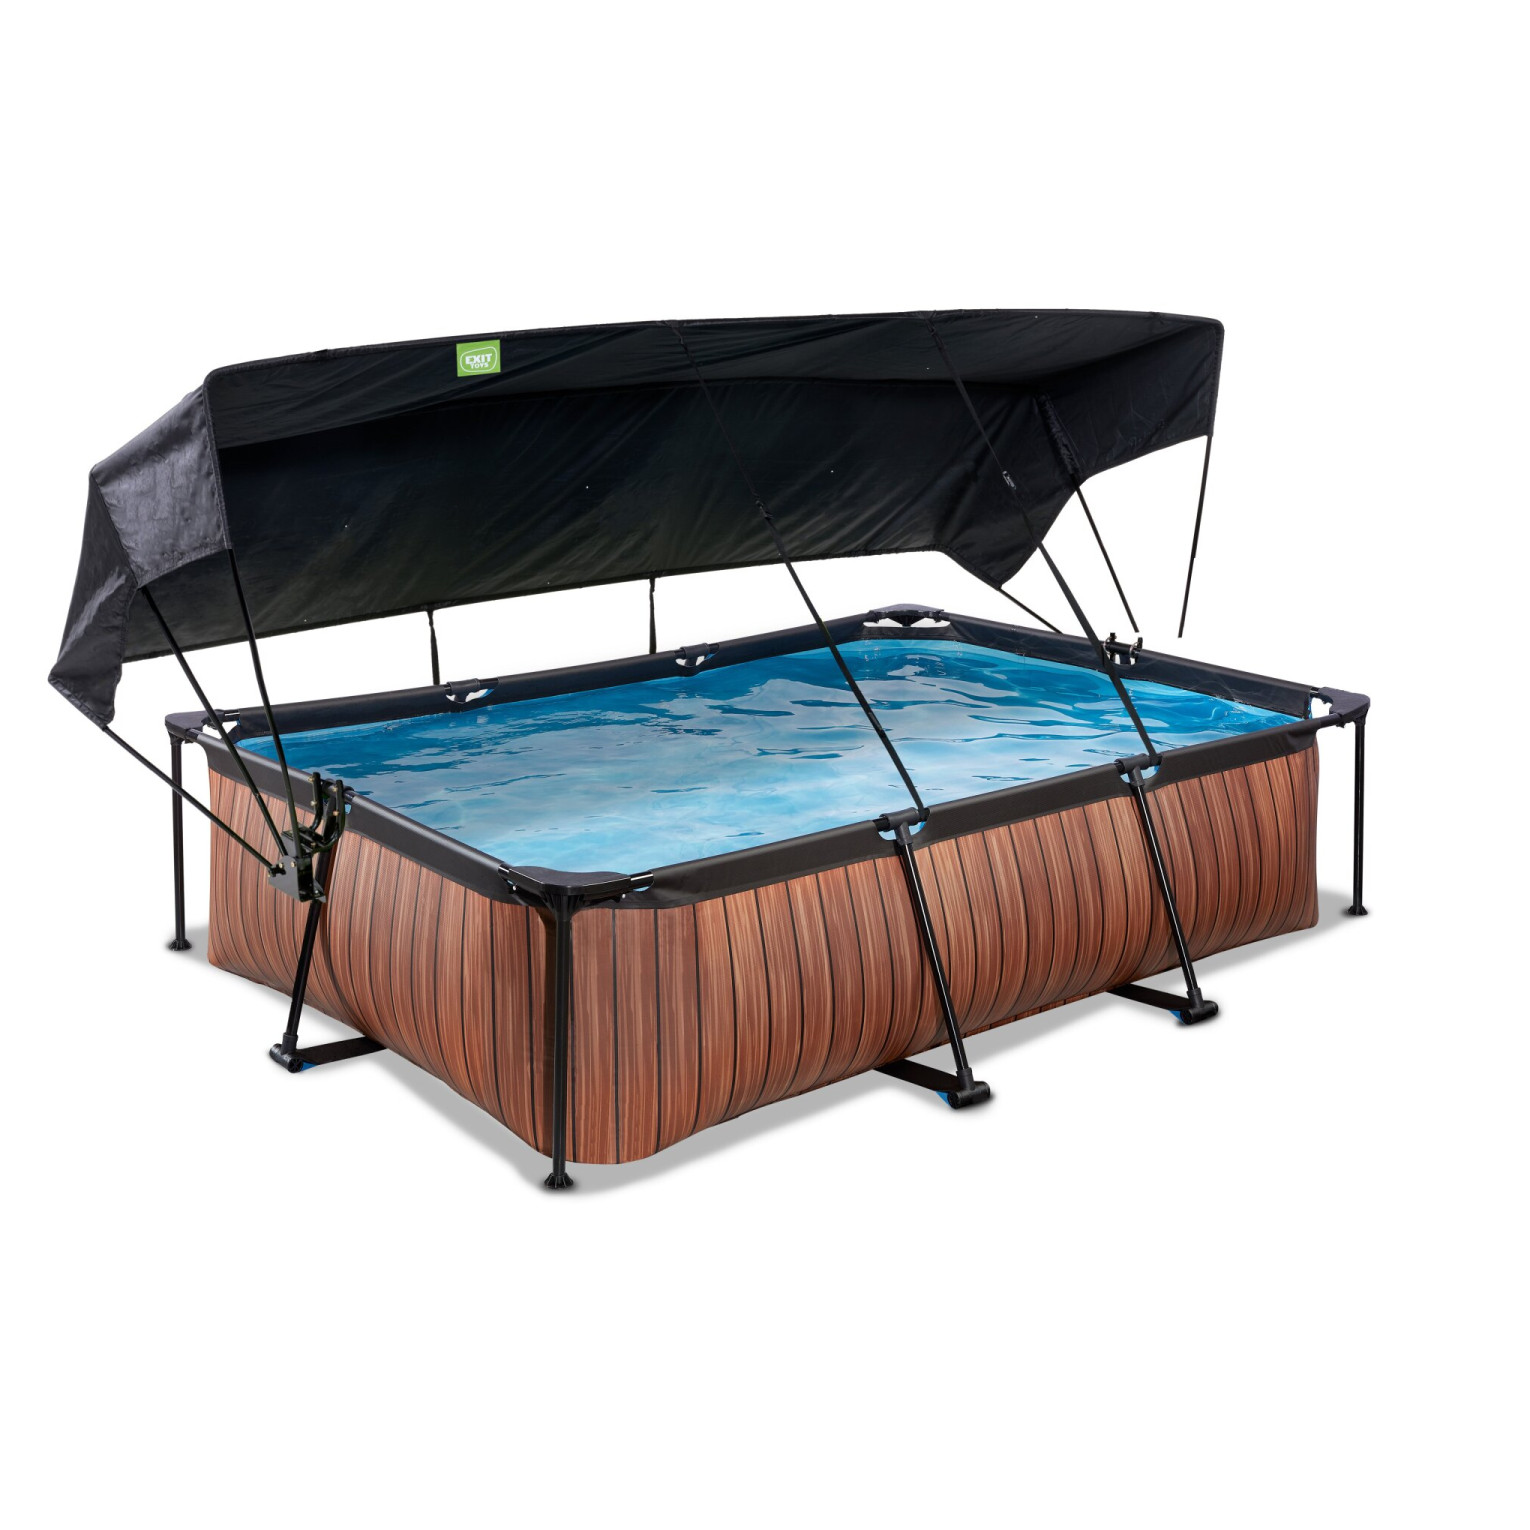 EXIT Wood zwembad 300x200x65cm met filterpomp en schaduwdoek